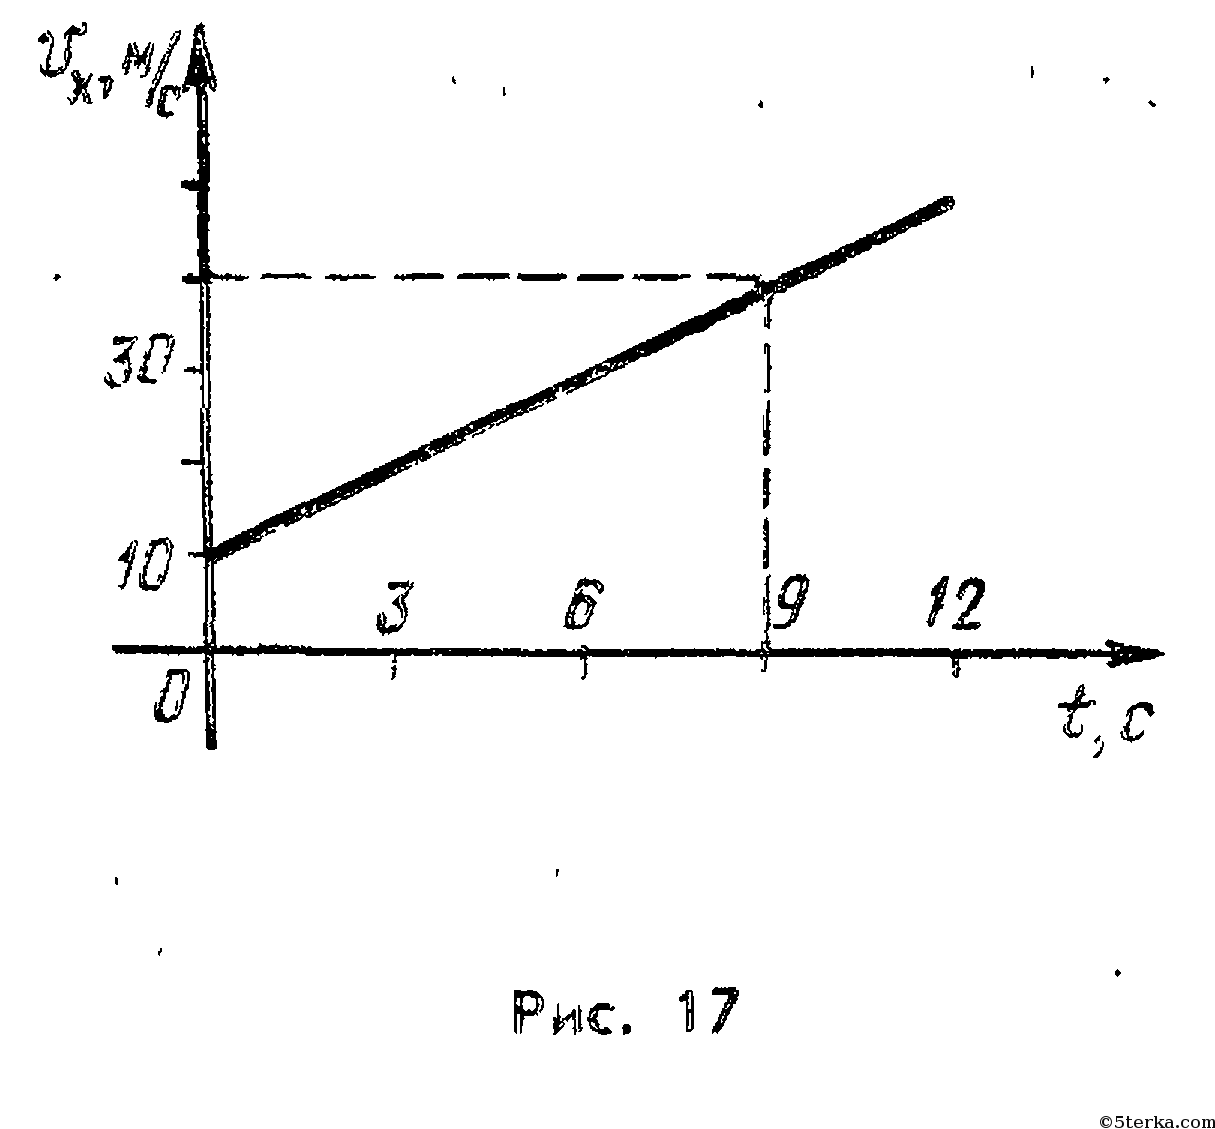 На рисунке изображены графики зависимости скоростей v двух точечных тел от времени t